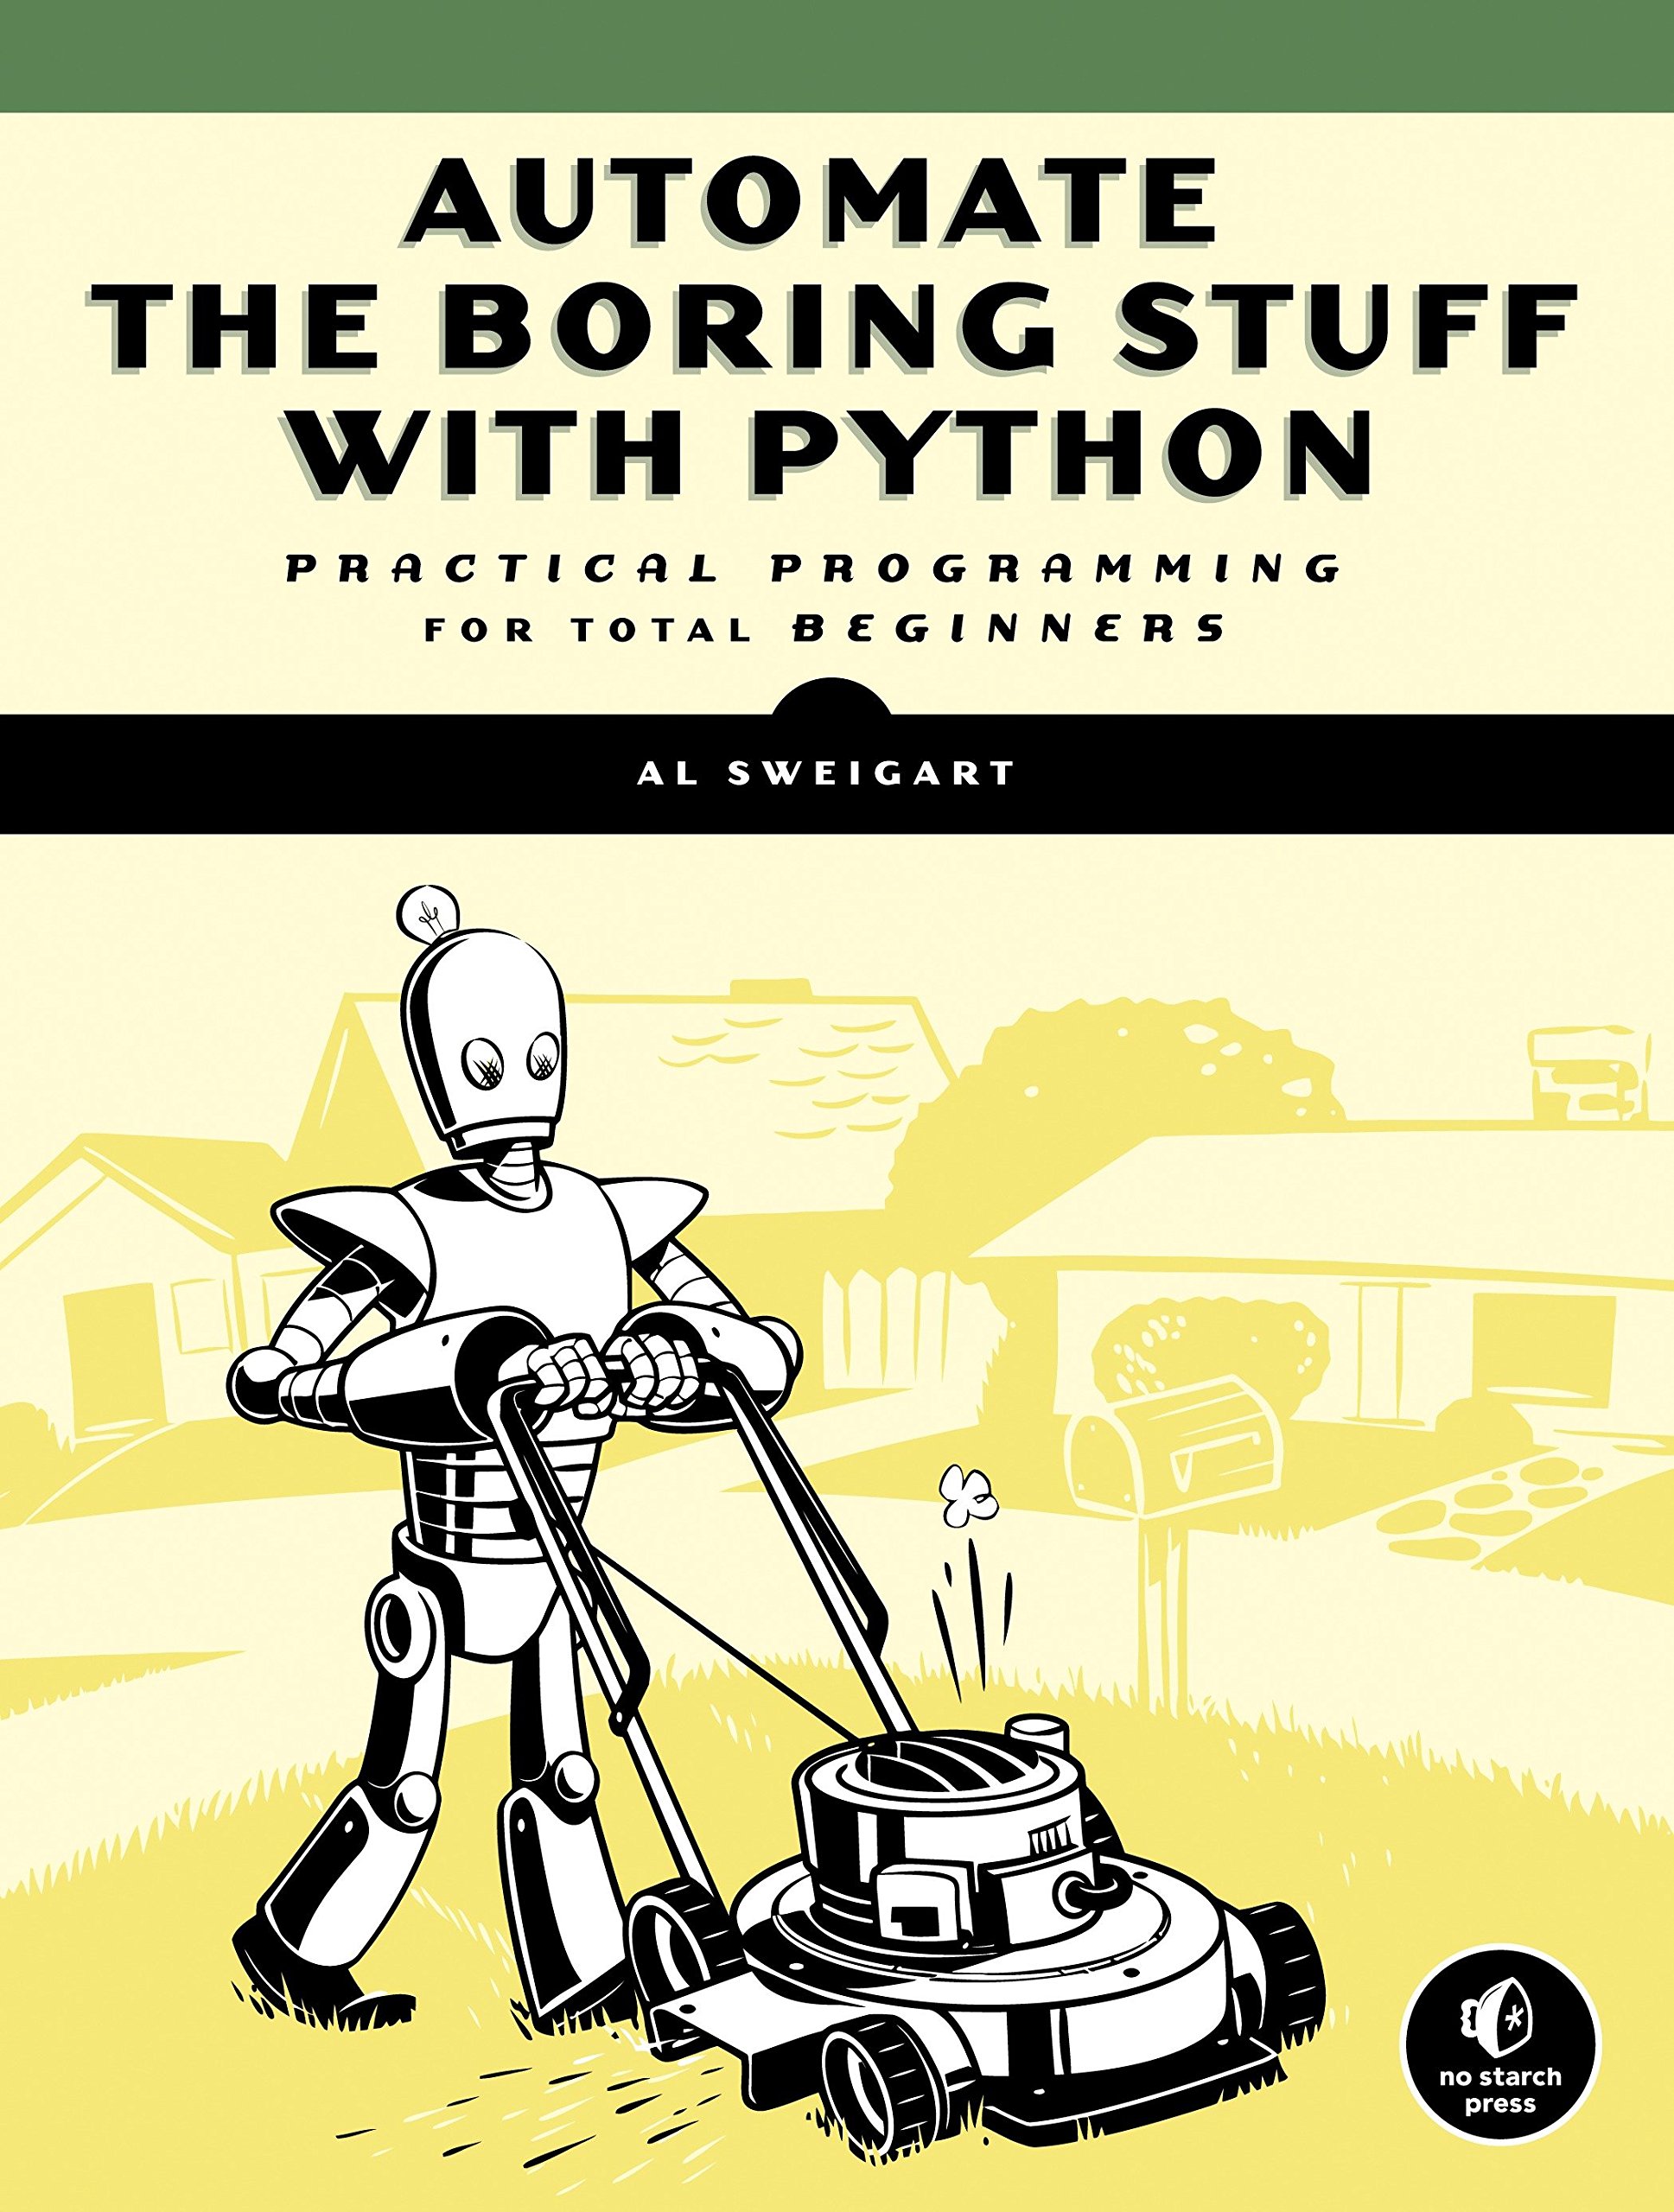 Руководство для начинающих книга. Эл Свейгарт «автоматизация рутинных задач с помощью Python». Automate the boring stuff. Книга автоматизация рутинных задач на Python. Automate the boring stuff with Python.